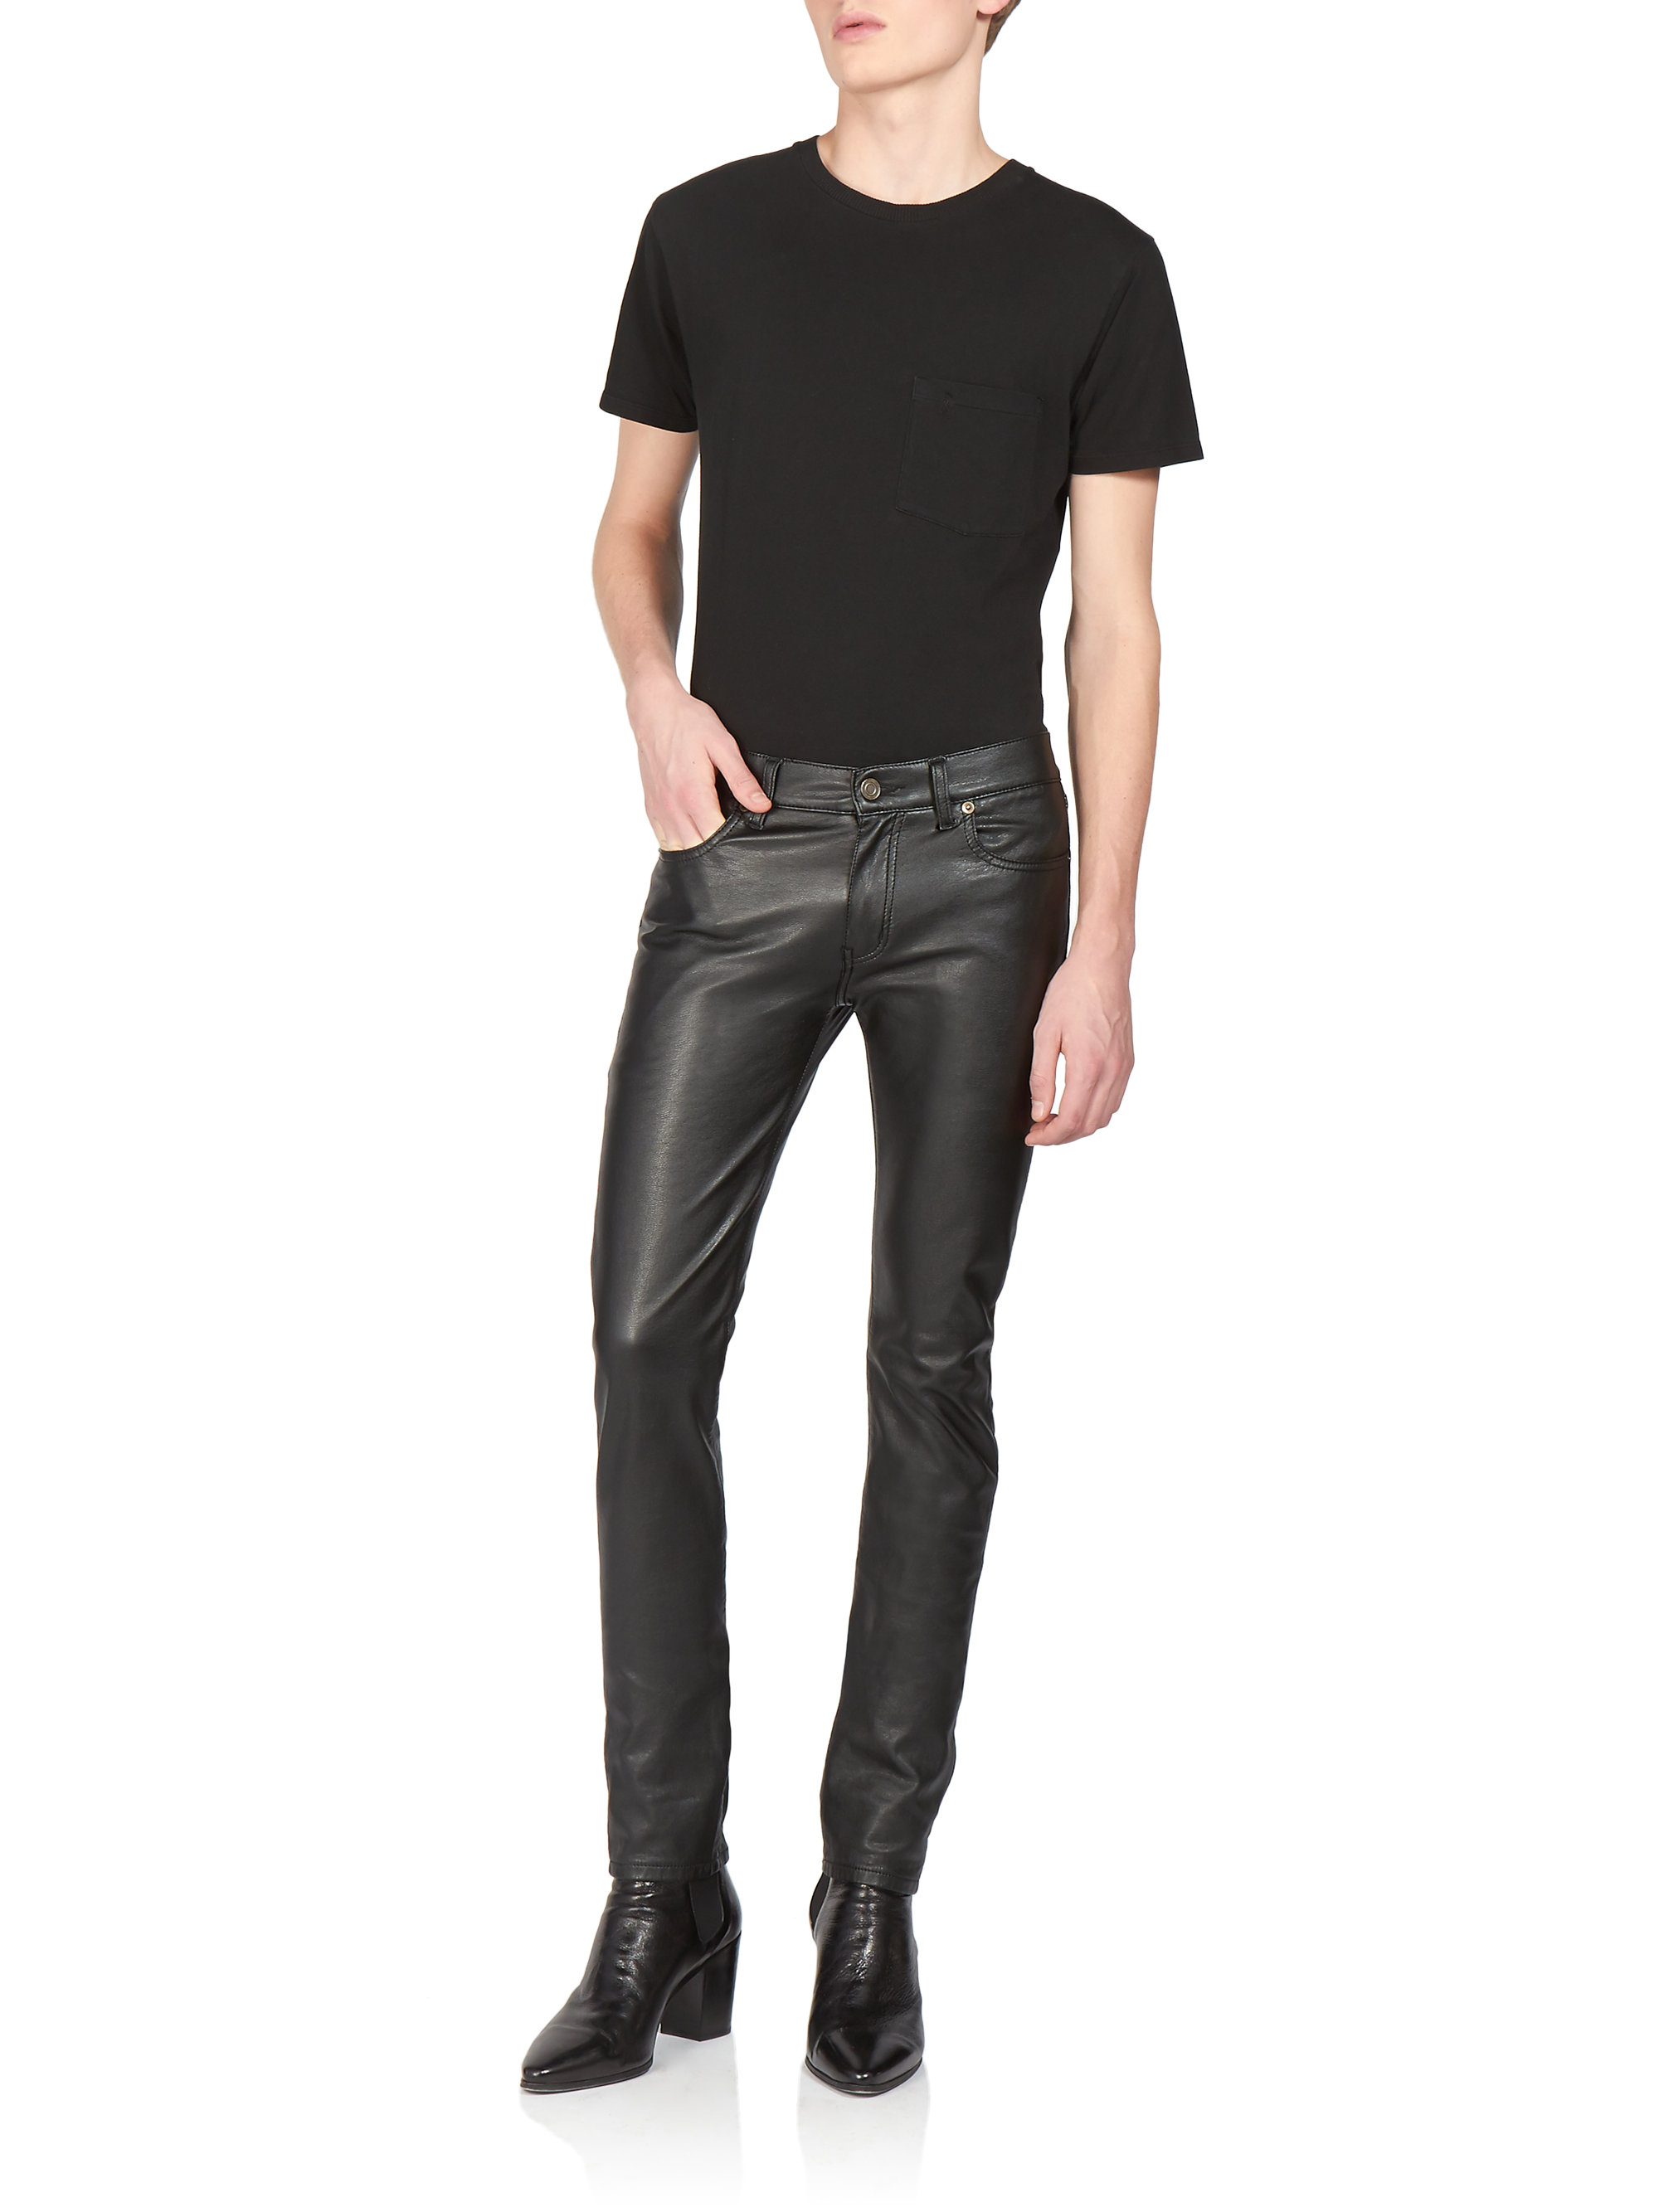 Saint Laurent Faux Leather Jeans in Black for Men - Lyst